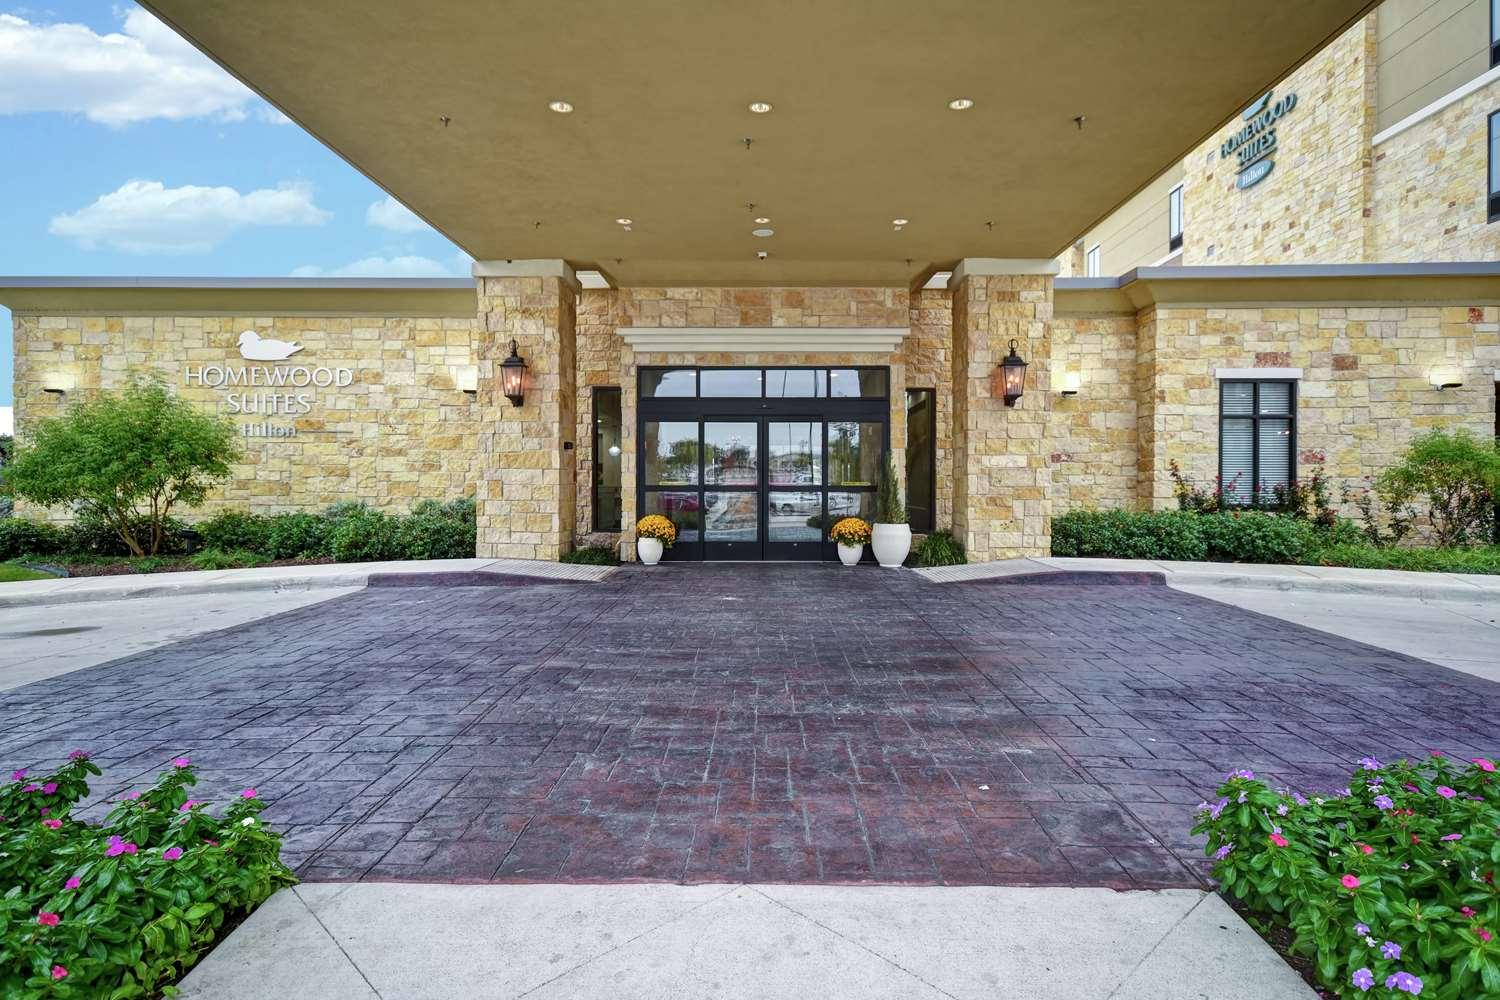 Homewood Suites by Hilton Dallas/Arlington South in Arlington, TX